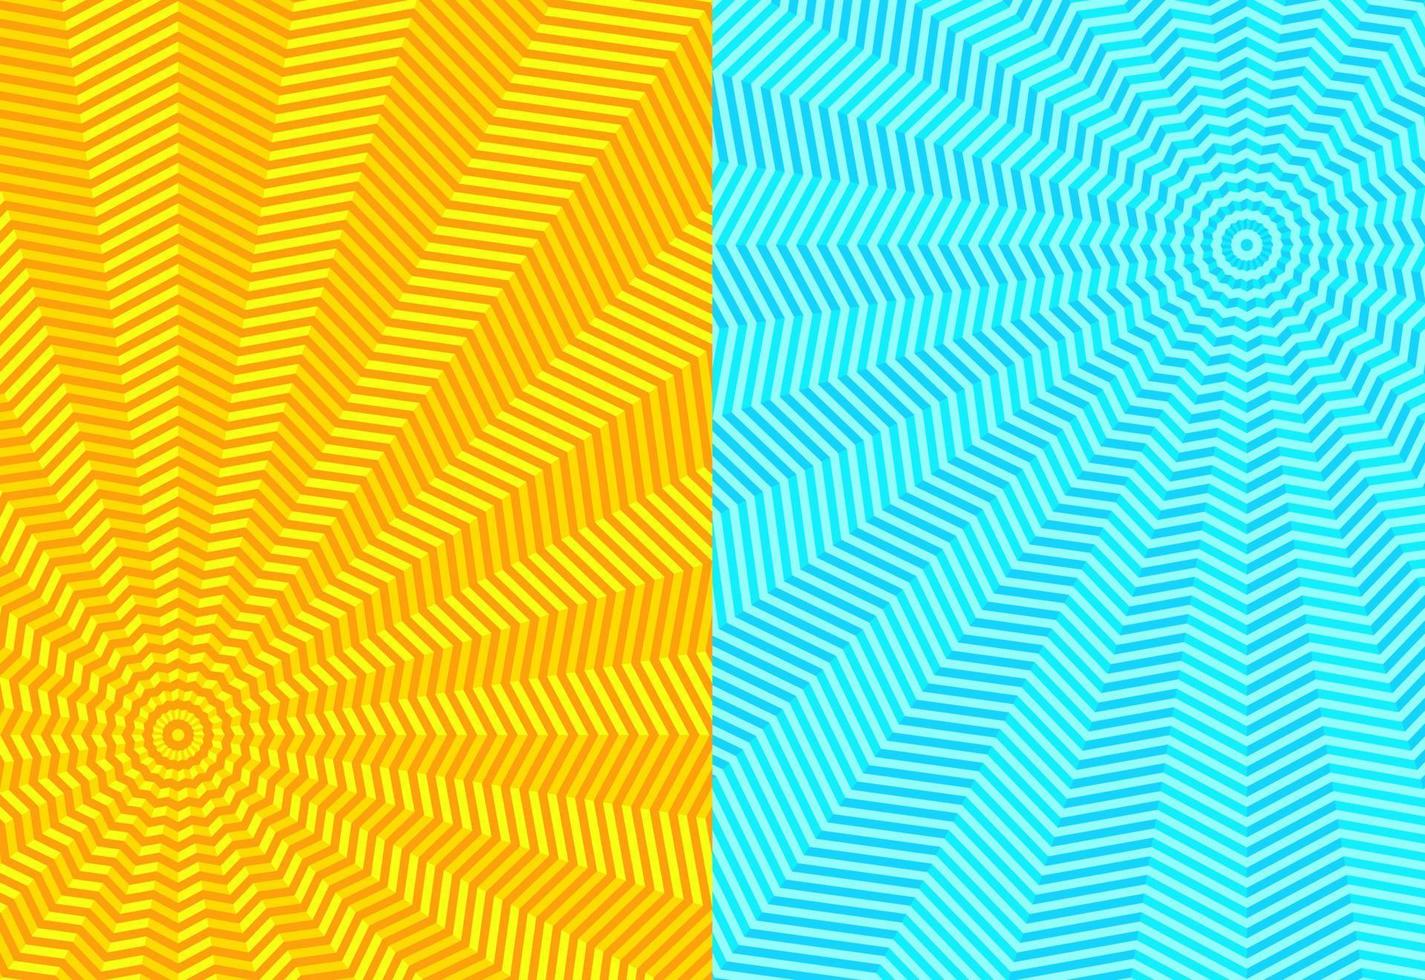 m13 - ilusão de fundo abstrato amarelo azul vetor